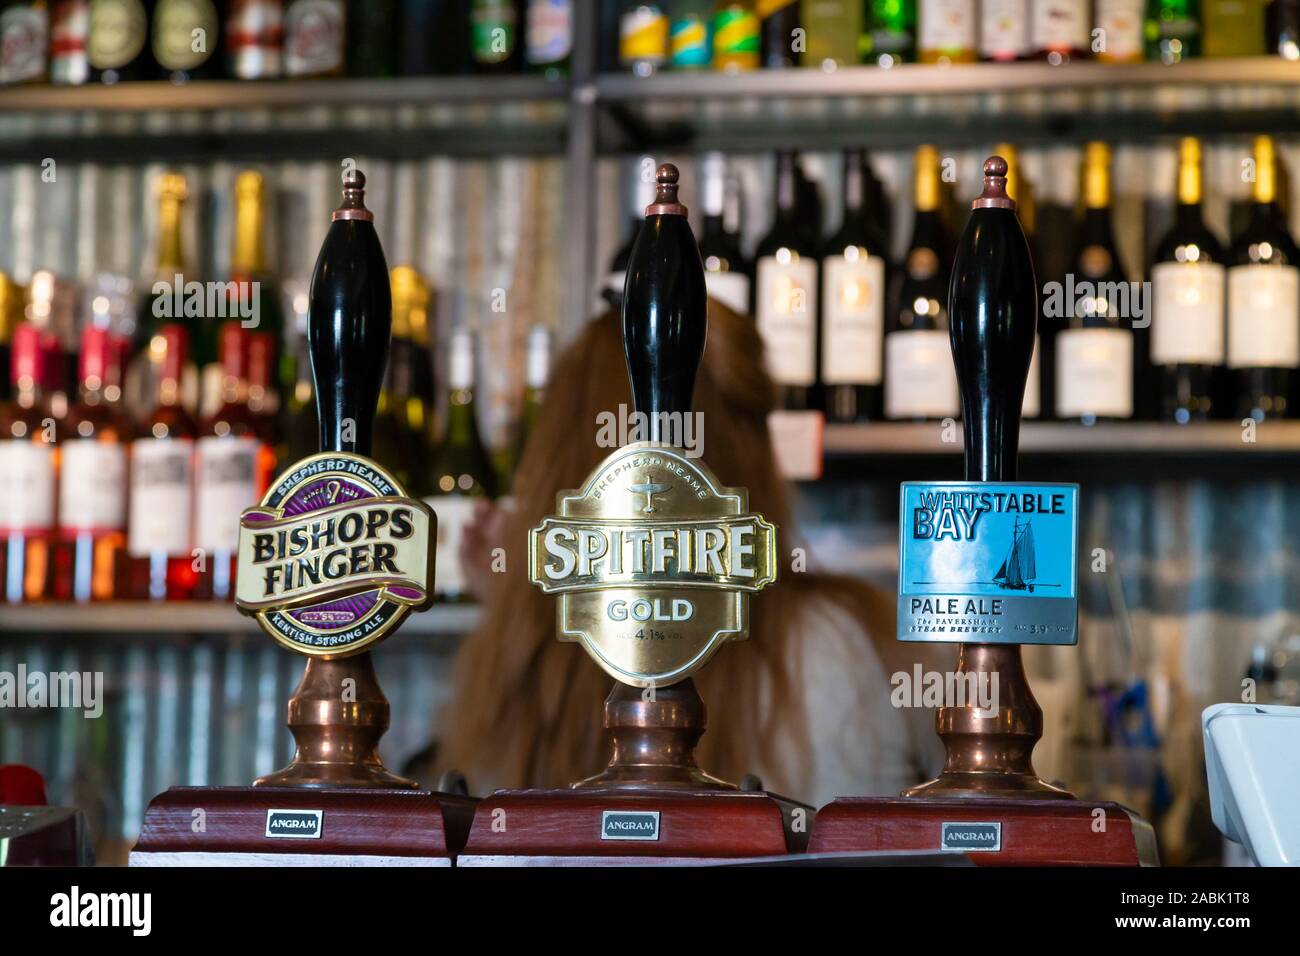 La birra pompe, vescovi dito, spitfire oro e whitstable bay ale, Regno Unito Foto Stock